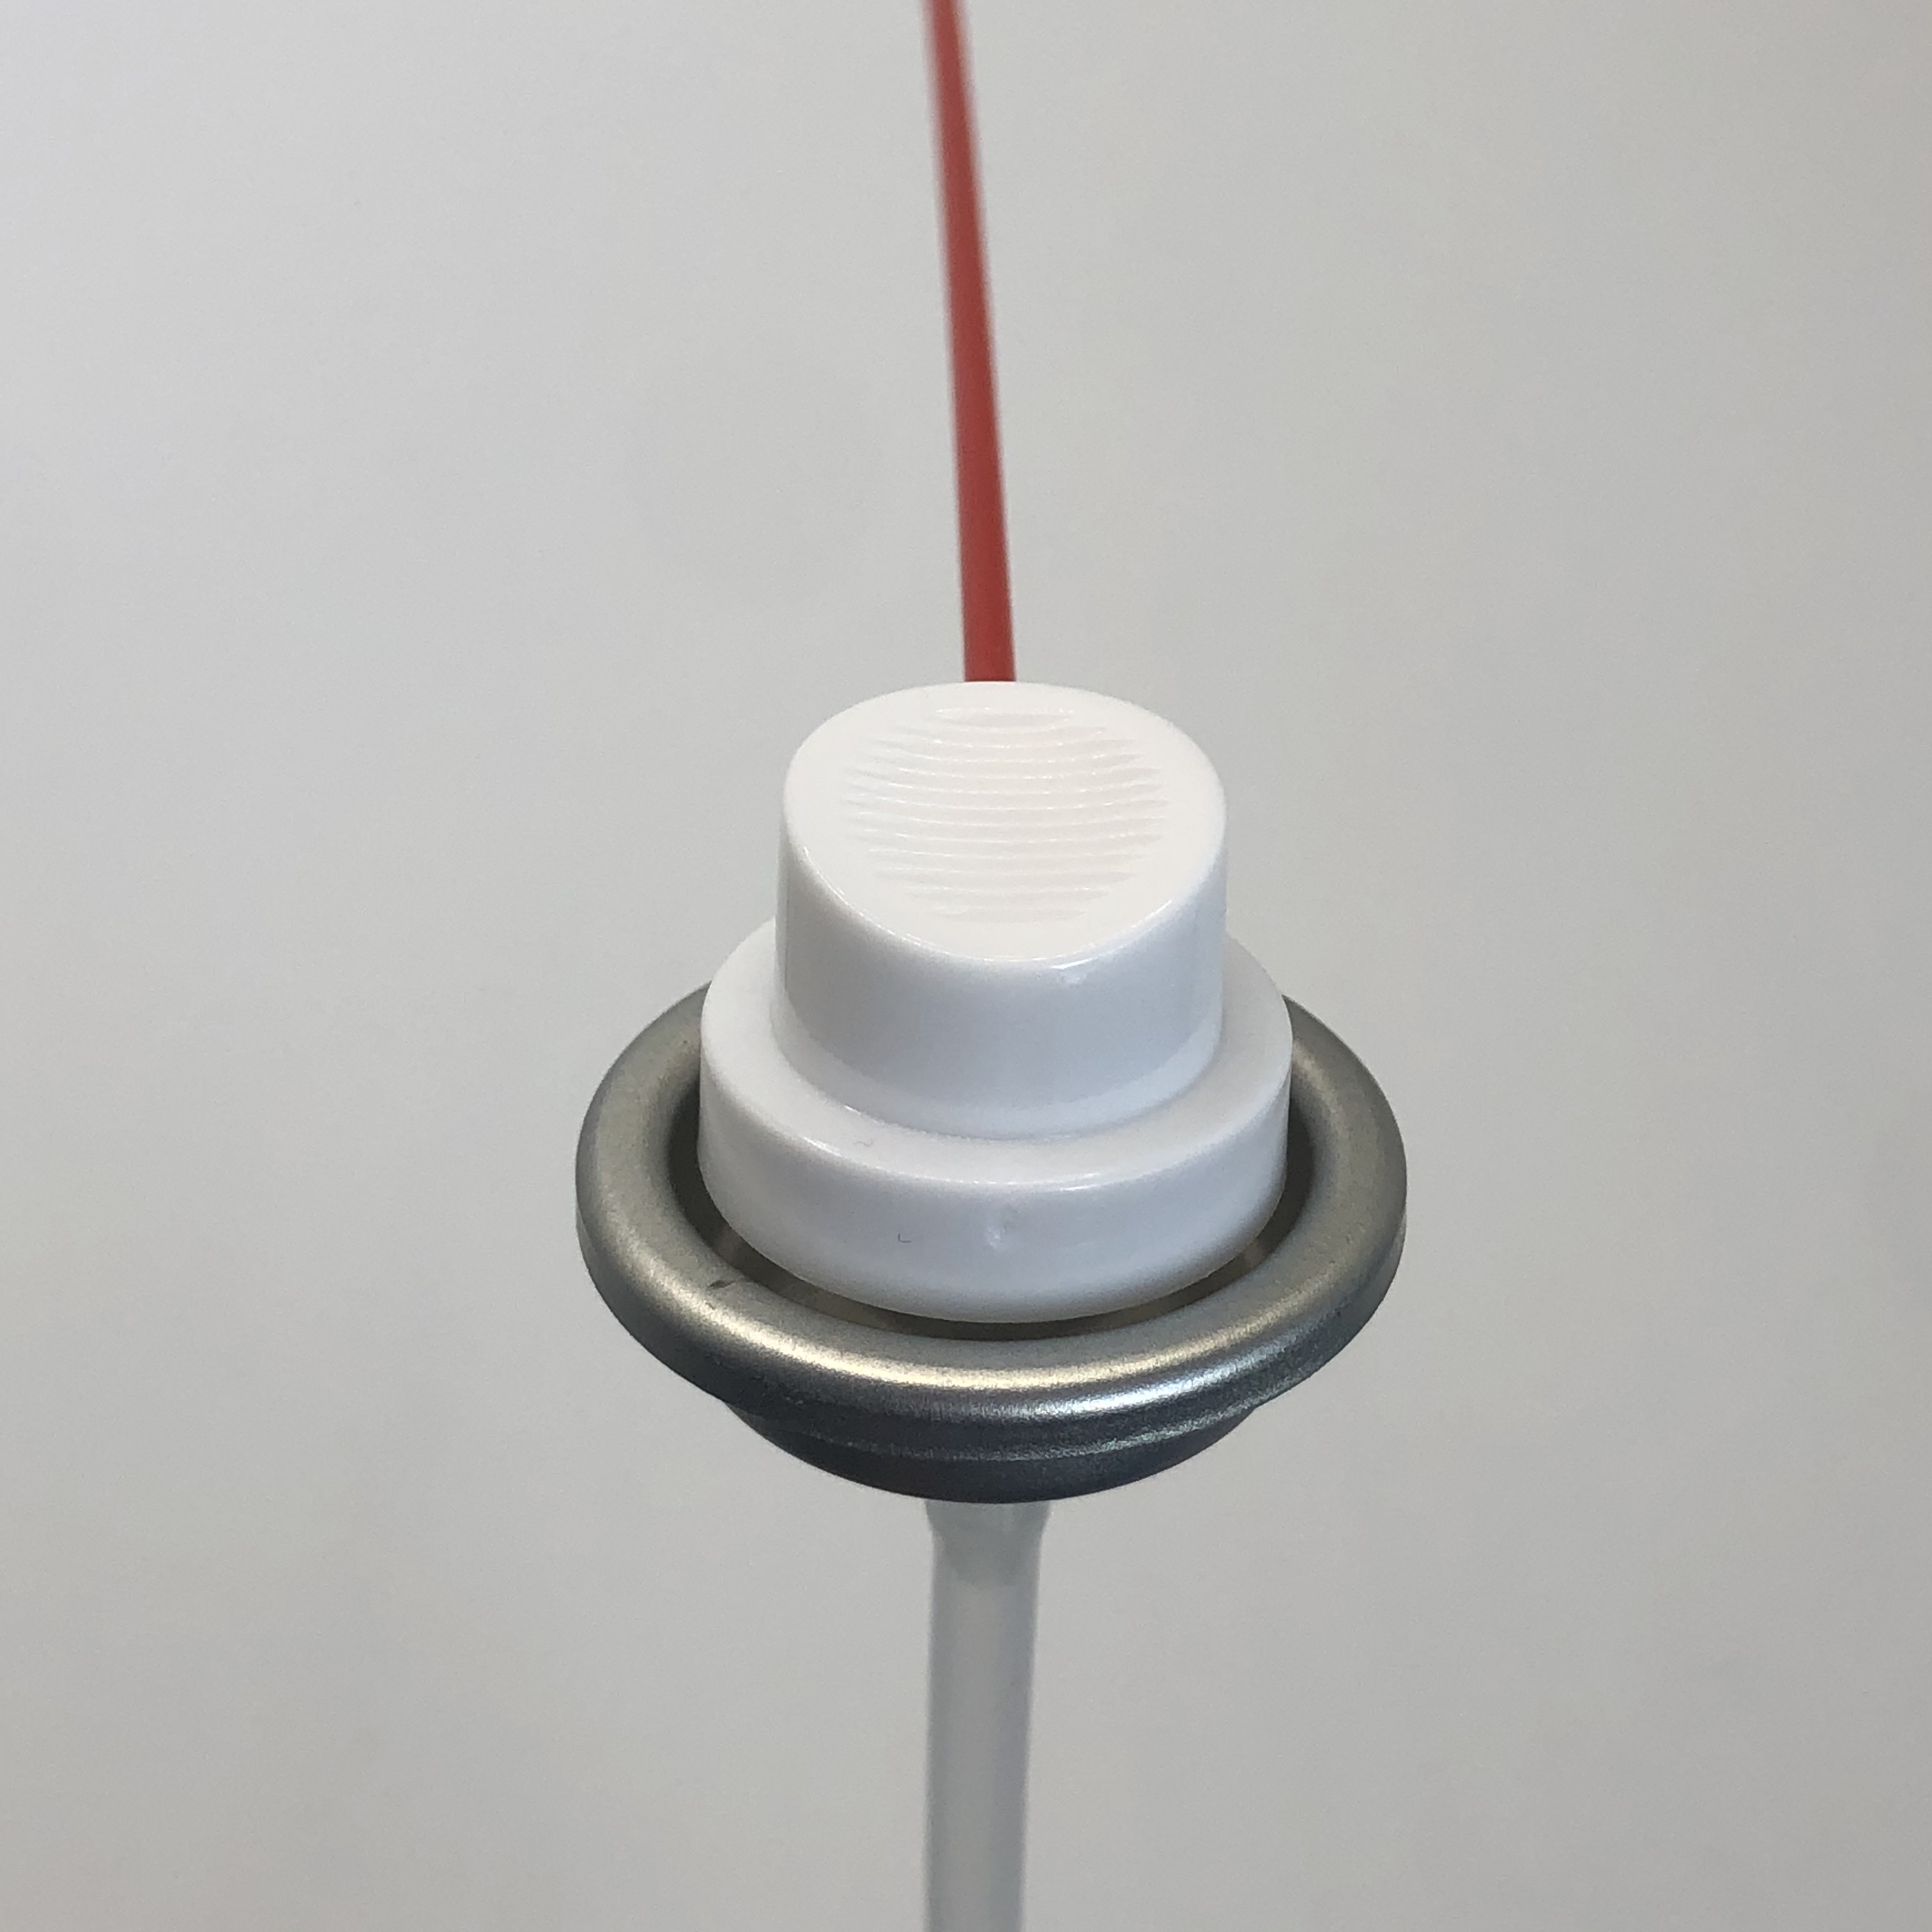  Válvula de pulverización de silicio de larga duración lubricación extendida para operación continua